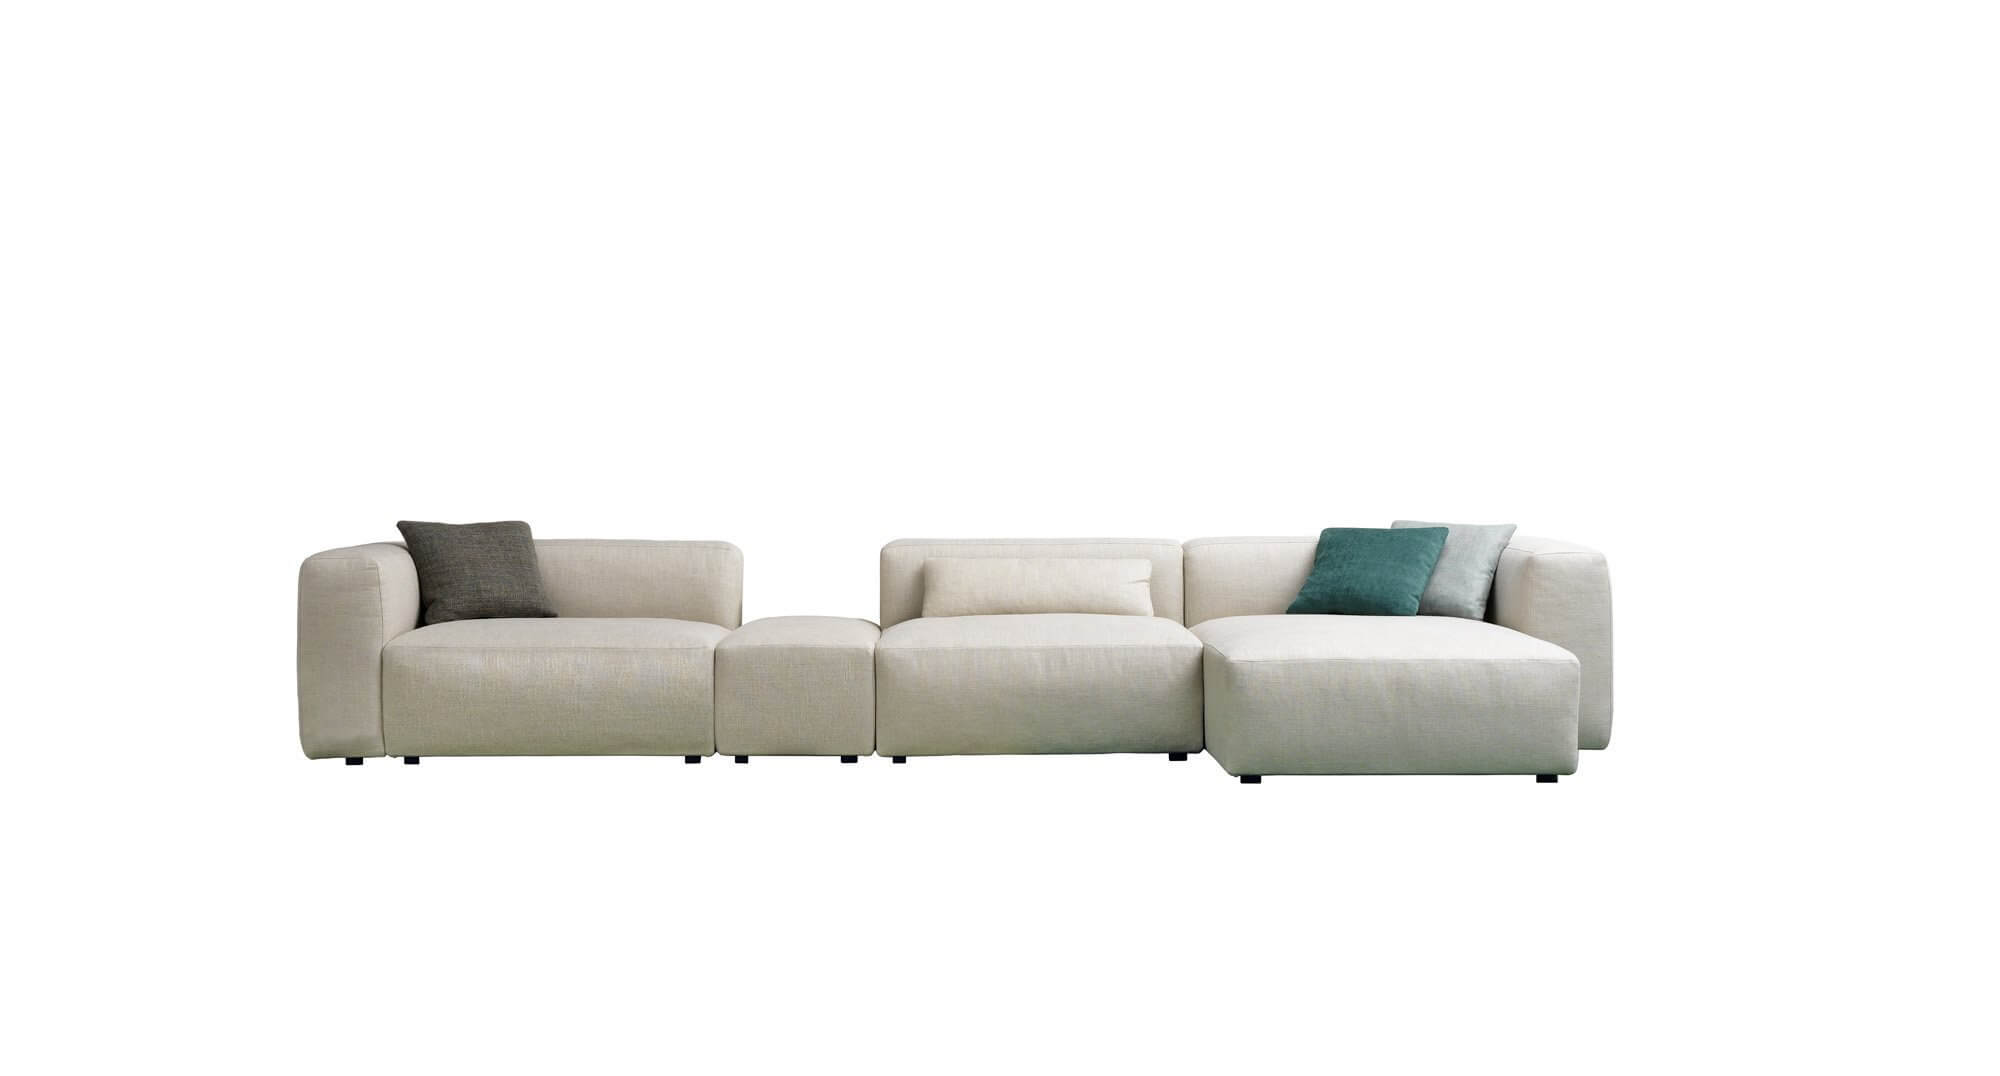 A modern Alcazar design kanapét mindössze apró lábai választják el a földtől így nem mondható túl magasnak.